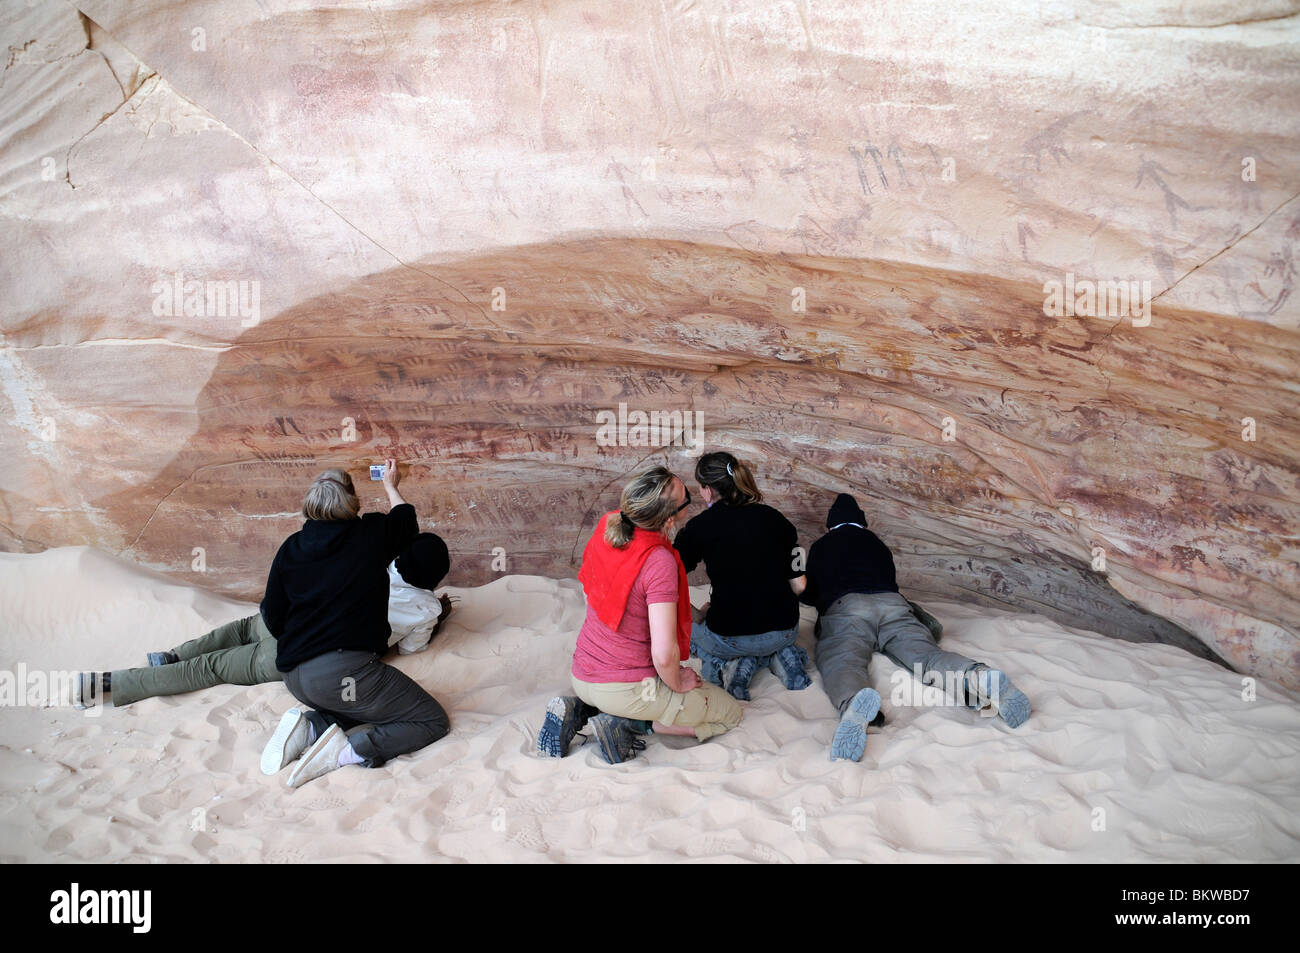 Les voyageurs qui examinent l'art rupestre néolithique à la grotte Foggini-Mestikawi, à Wadi Sura, dans la région de Gilf Kebir, dans le désert du Sahara (occidental) en Égypte. Banque D'Images